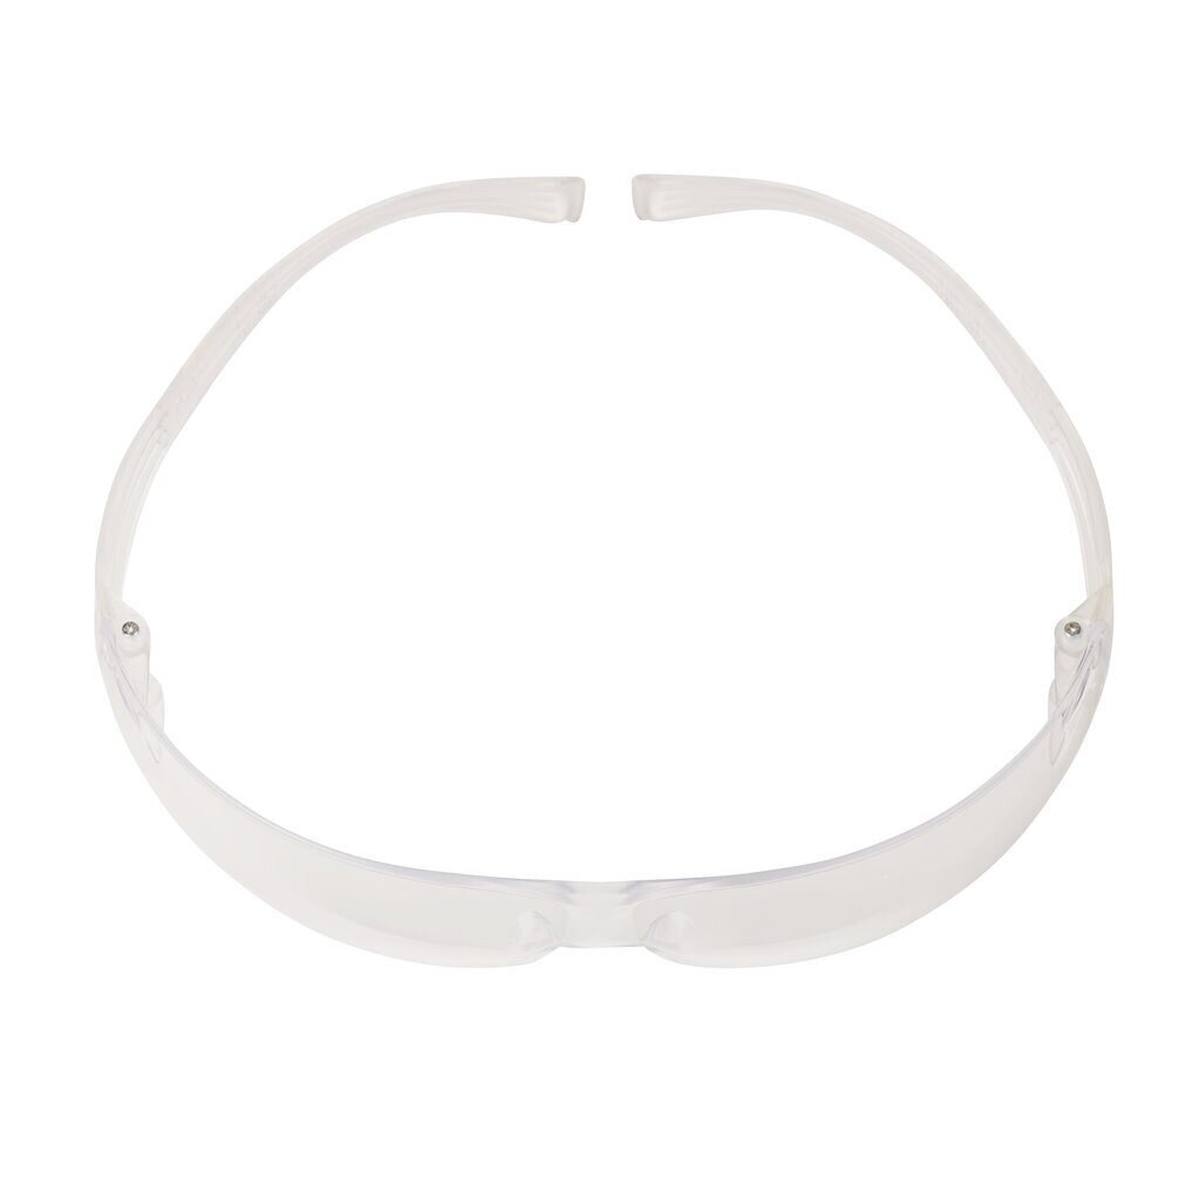 occhiali di sicurezza 3M SecureFit 400 Reader, aste nere/verdi, rivestimento antigraffio/antiappannamento, lenti chiare con resistenza +1,5, SF415AS/AF-EU